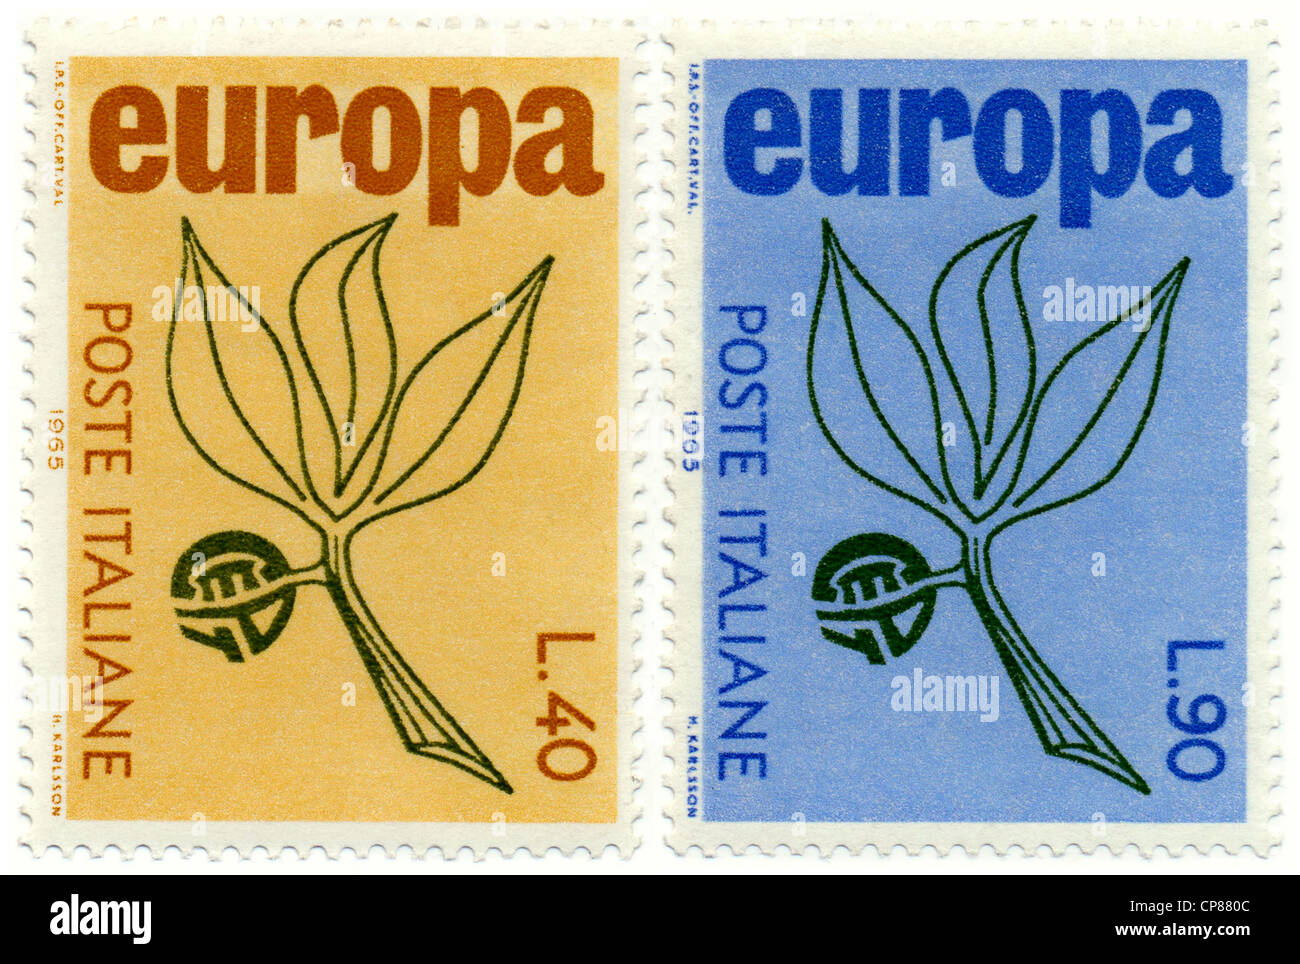 Timbres-poste historique, Historische Briefmarken, Europa-Marken, 1965, Italie Banque D'Images